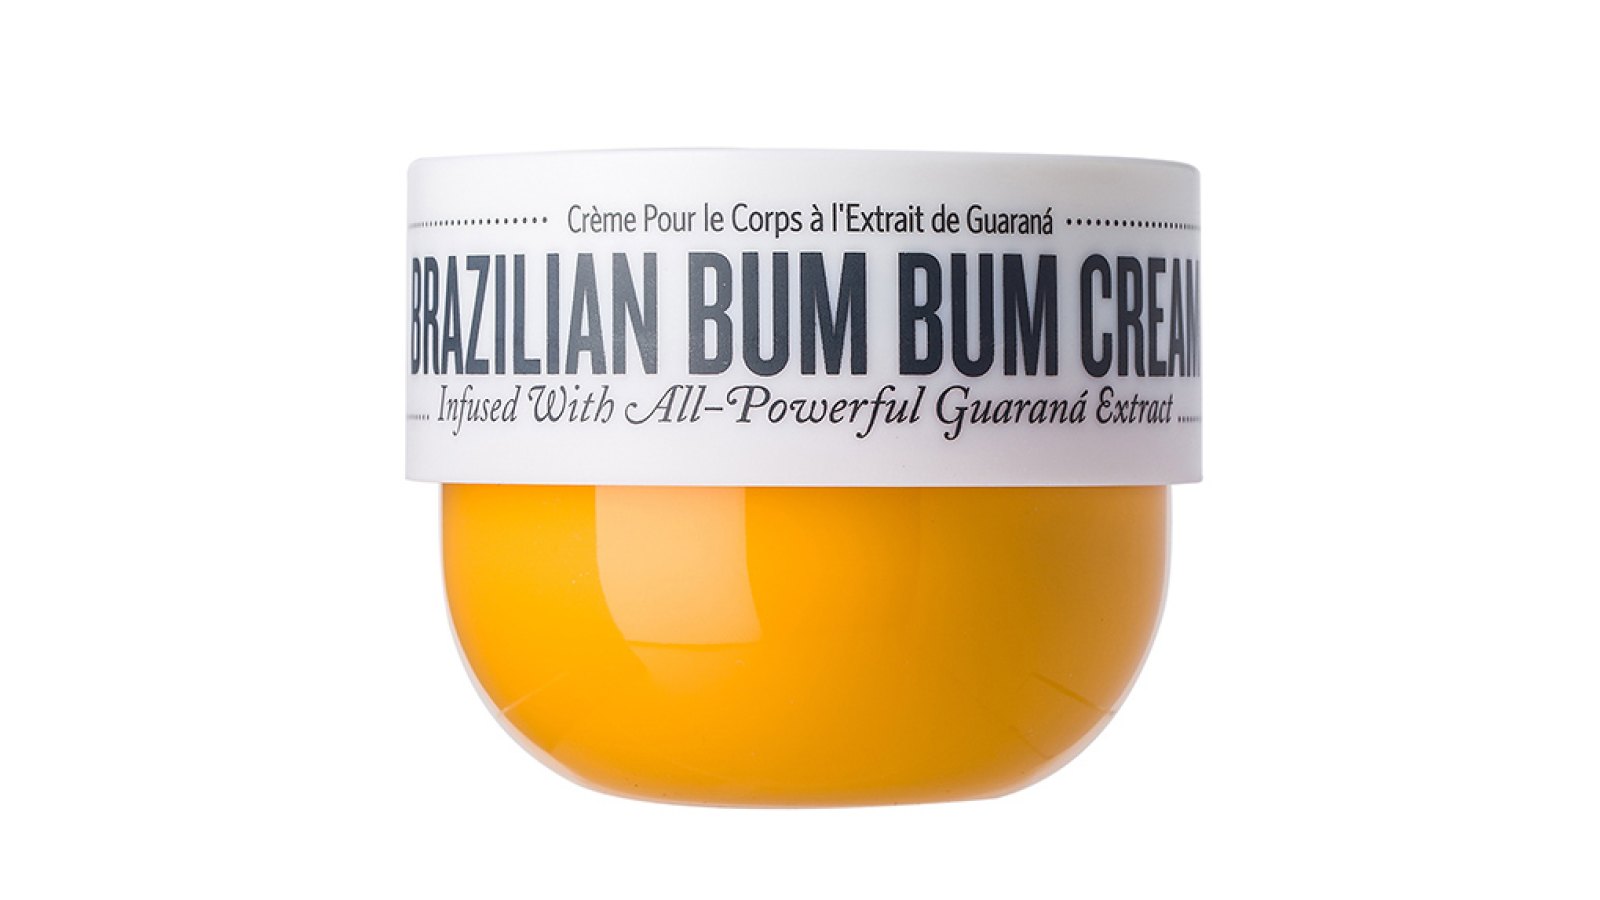 bum bum cream